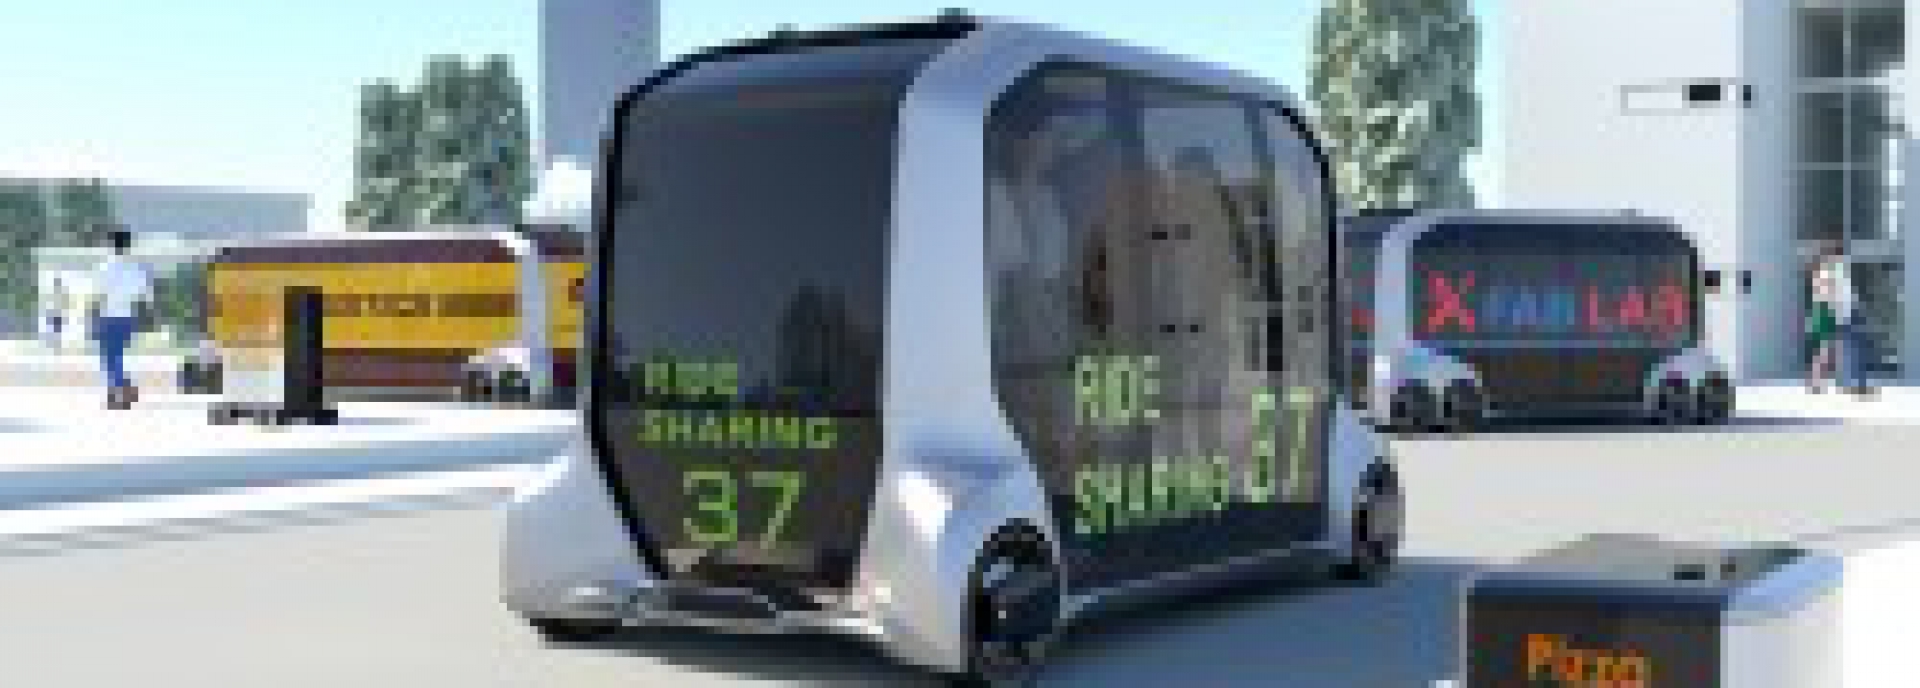 2018 m. technologijų parodoje „CES®“ TOYOTA pristatė naują mobilumo ekosistemą ir koncepcinę transporto priemonę